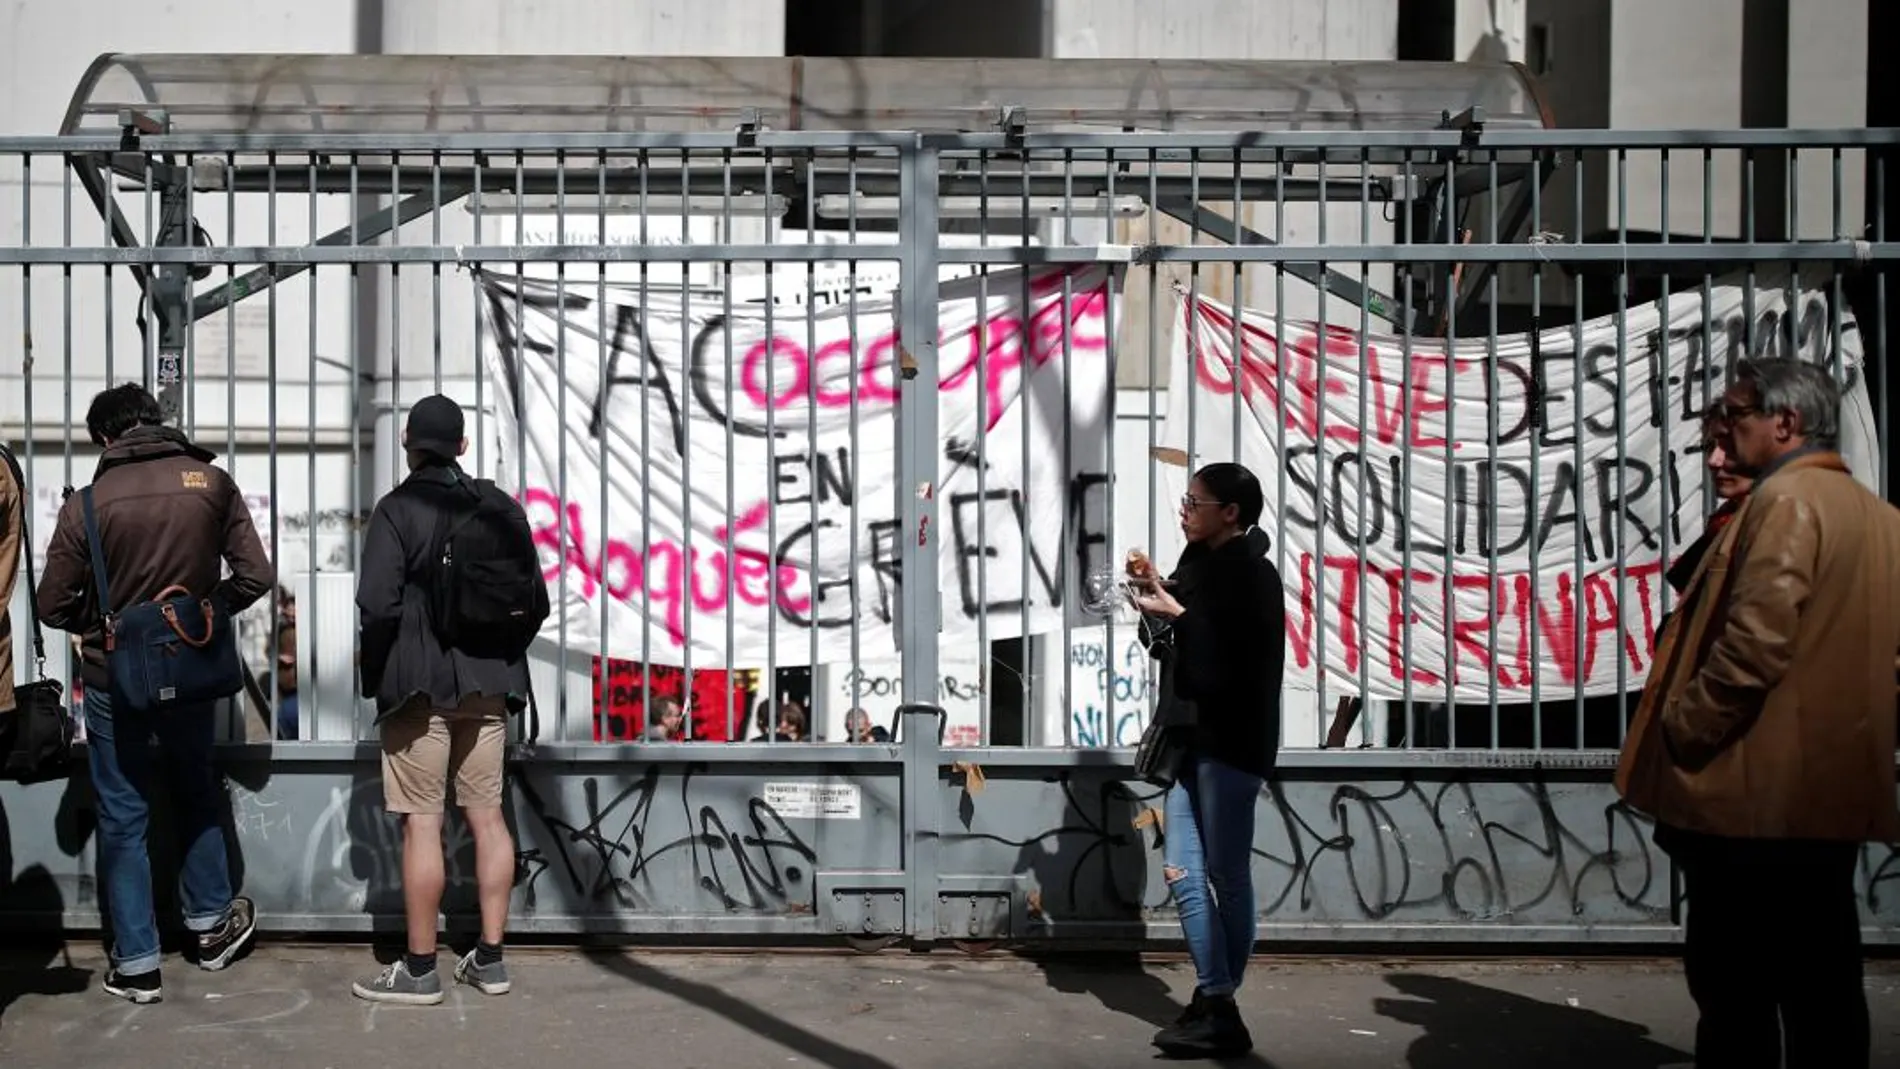 La facultad parisina de Tolbiac está bloqueada desde el pasado 26 de marzo y que se había convertido en símbolo de la protesta estudiantil contra la reforma del acceso a la universidad.